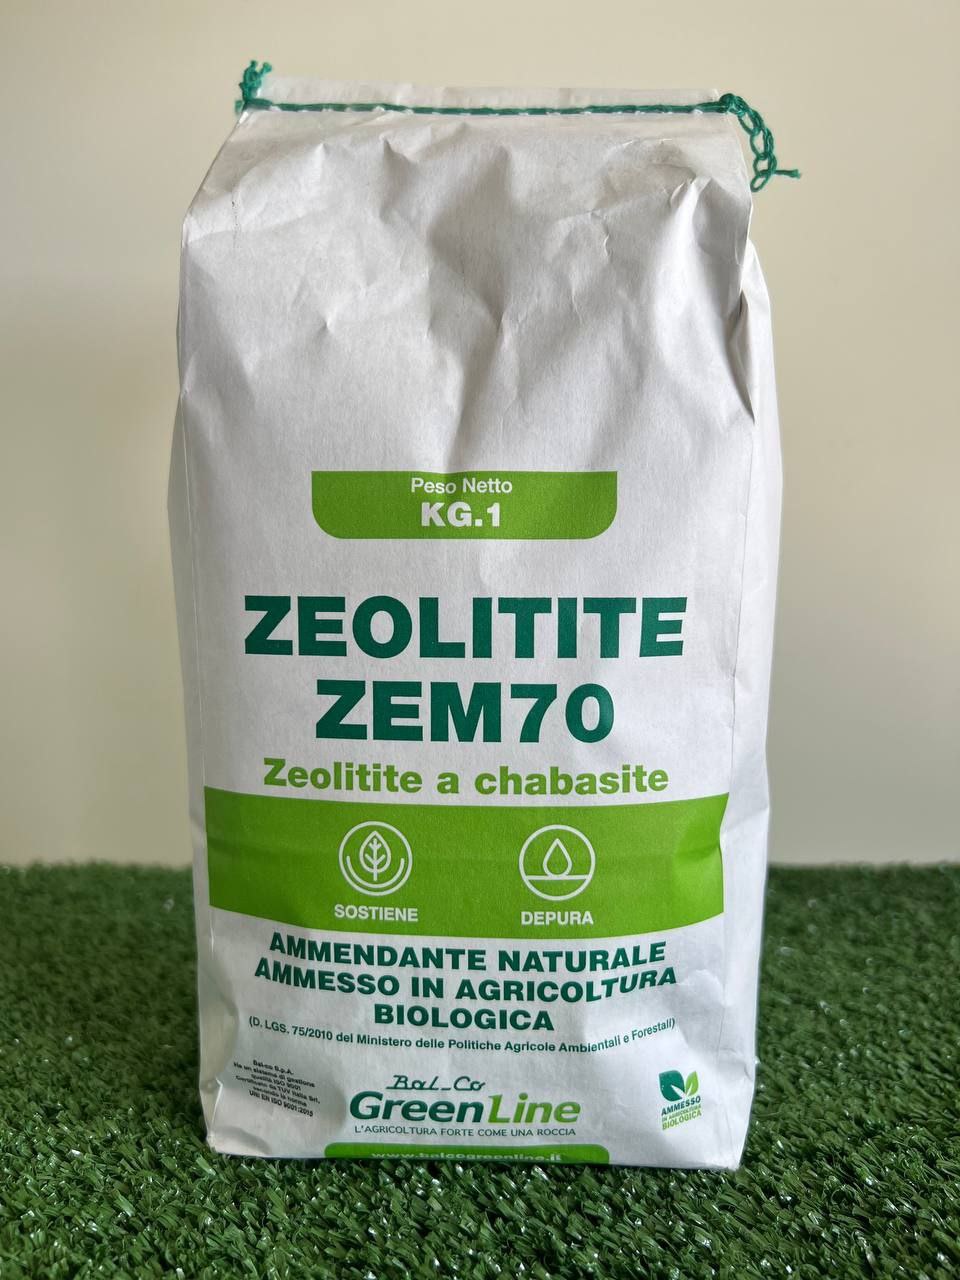 Zeolite attivata: gli utilizzi per l'Agricoltura biologica e